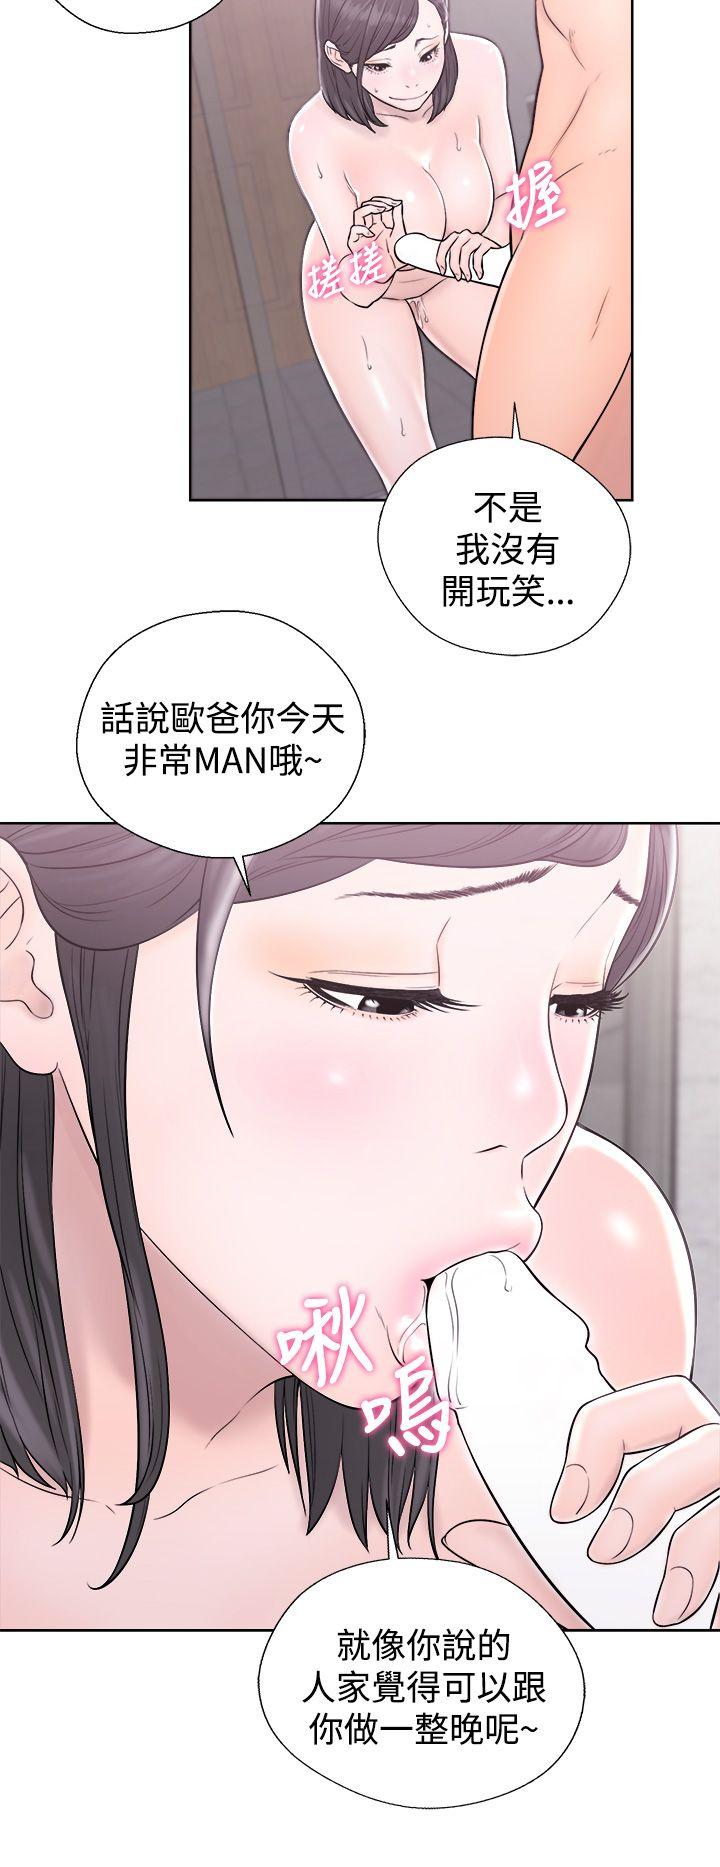 韩国污漫画 青春:逆齡小鮮肉 第4话 38